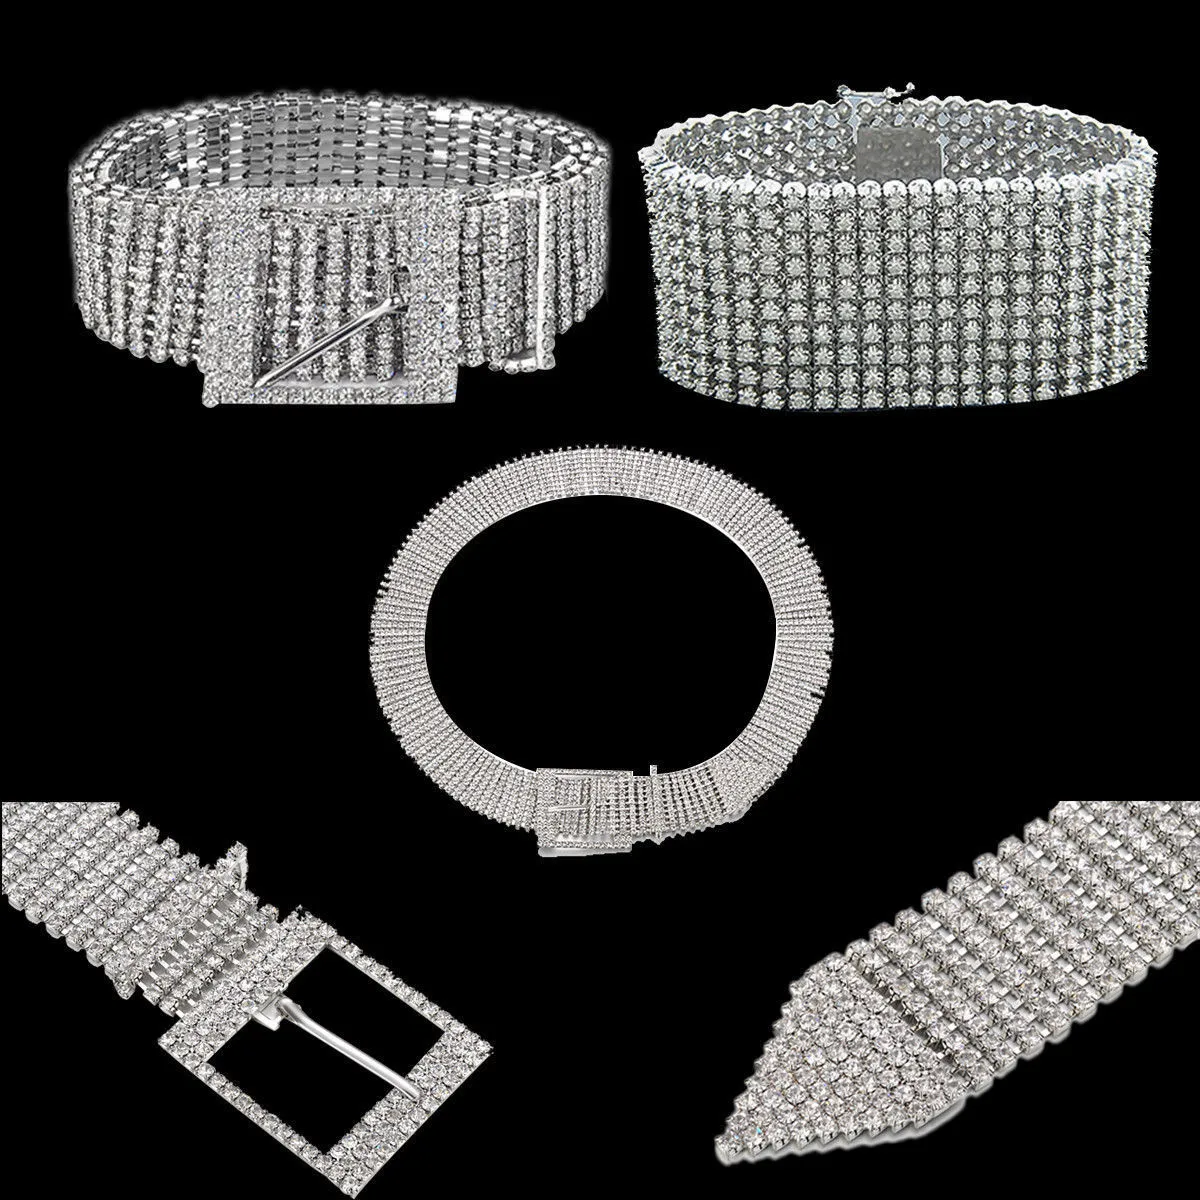 Nuovo argento pieno strass diamante moda donna cintura paillettes corsetto cintura harajuku signore fascino vita accessorio taglia Y200424865801855950